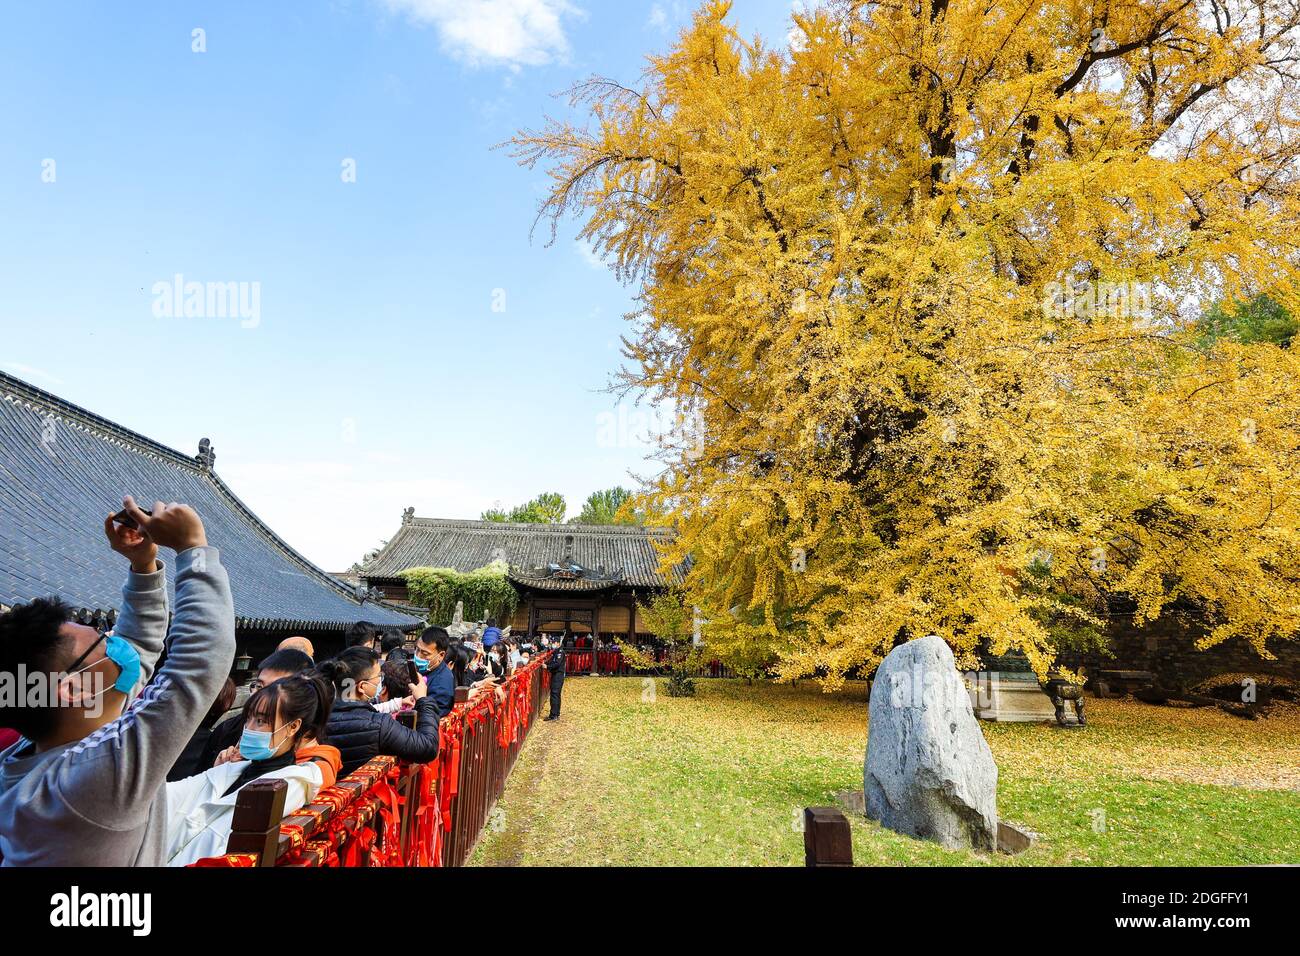 Un albero di 1,400 anni di ginkgo sta cadendo foglie sul terreno da novembre, trasformando il terreno di un tempio buddista in un oceano giallo e quindi dra Foto Stock